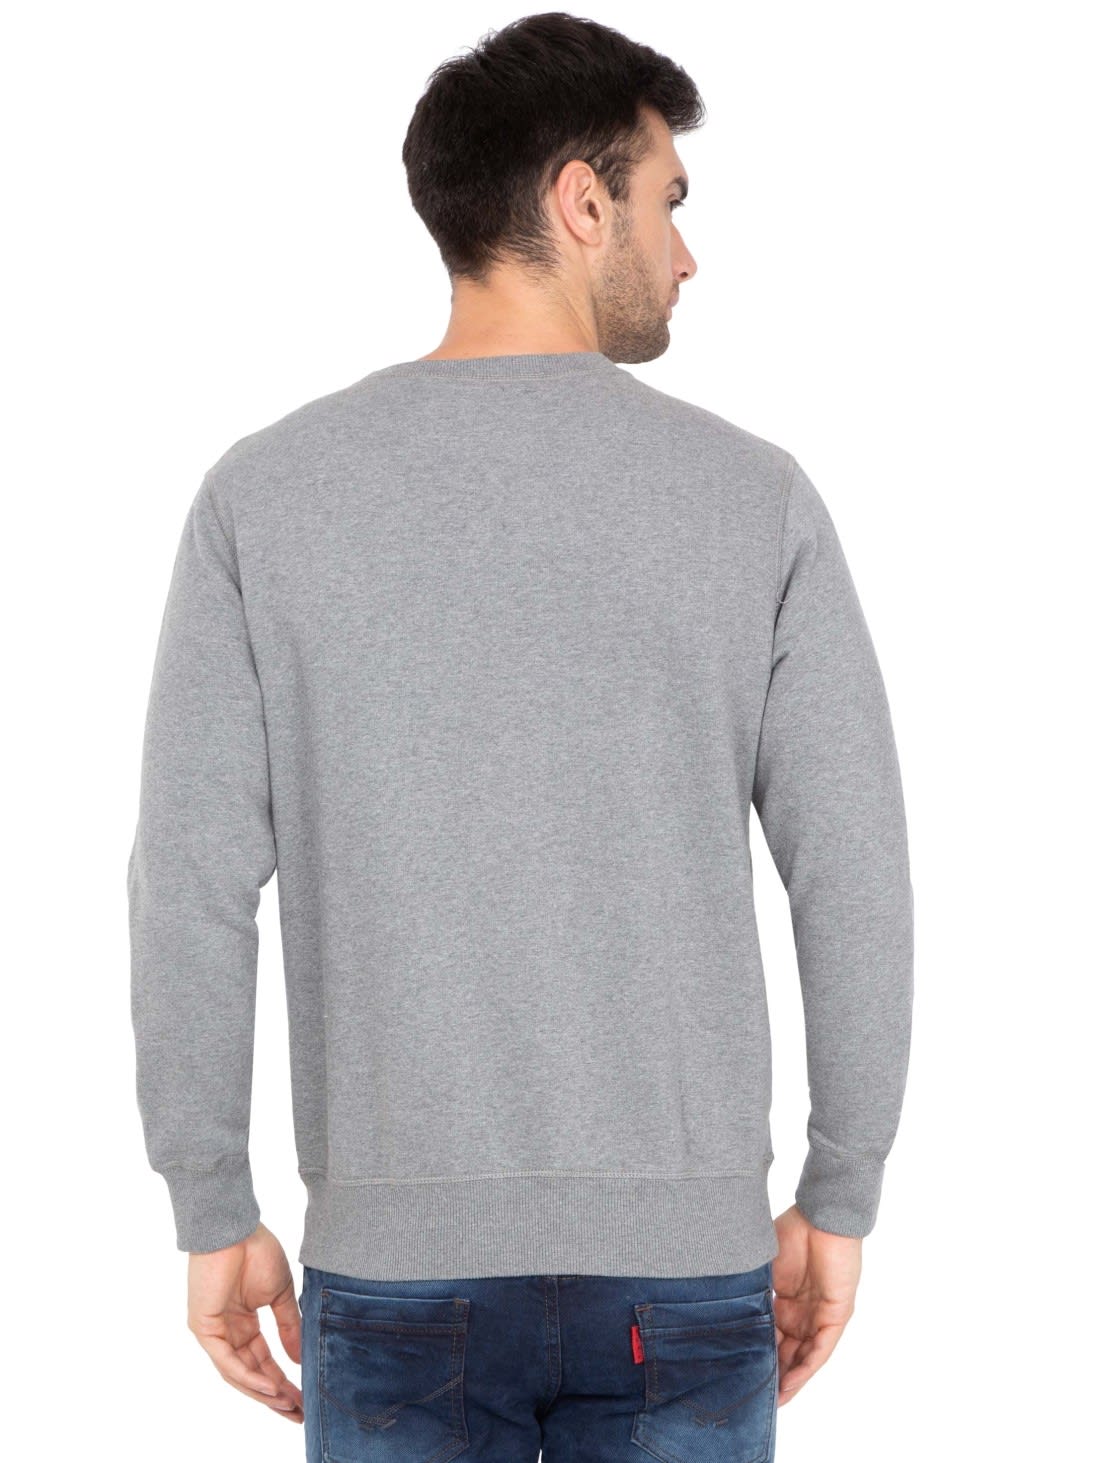 Download Jockey Men Apparel Tops | Grey Melange Sweatshirt